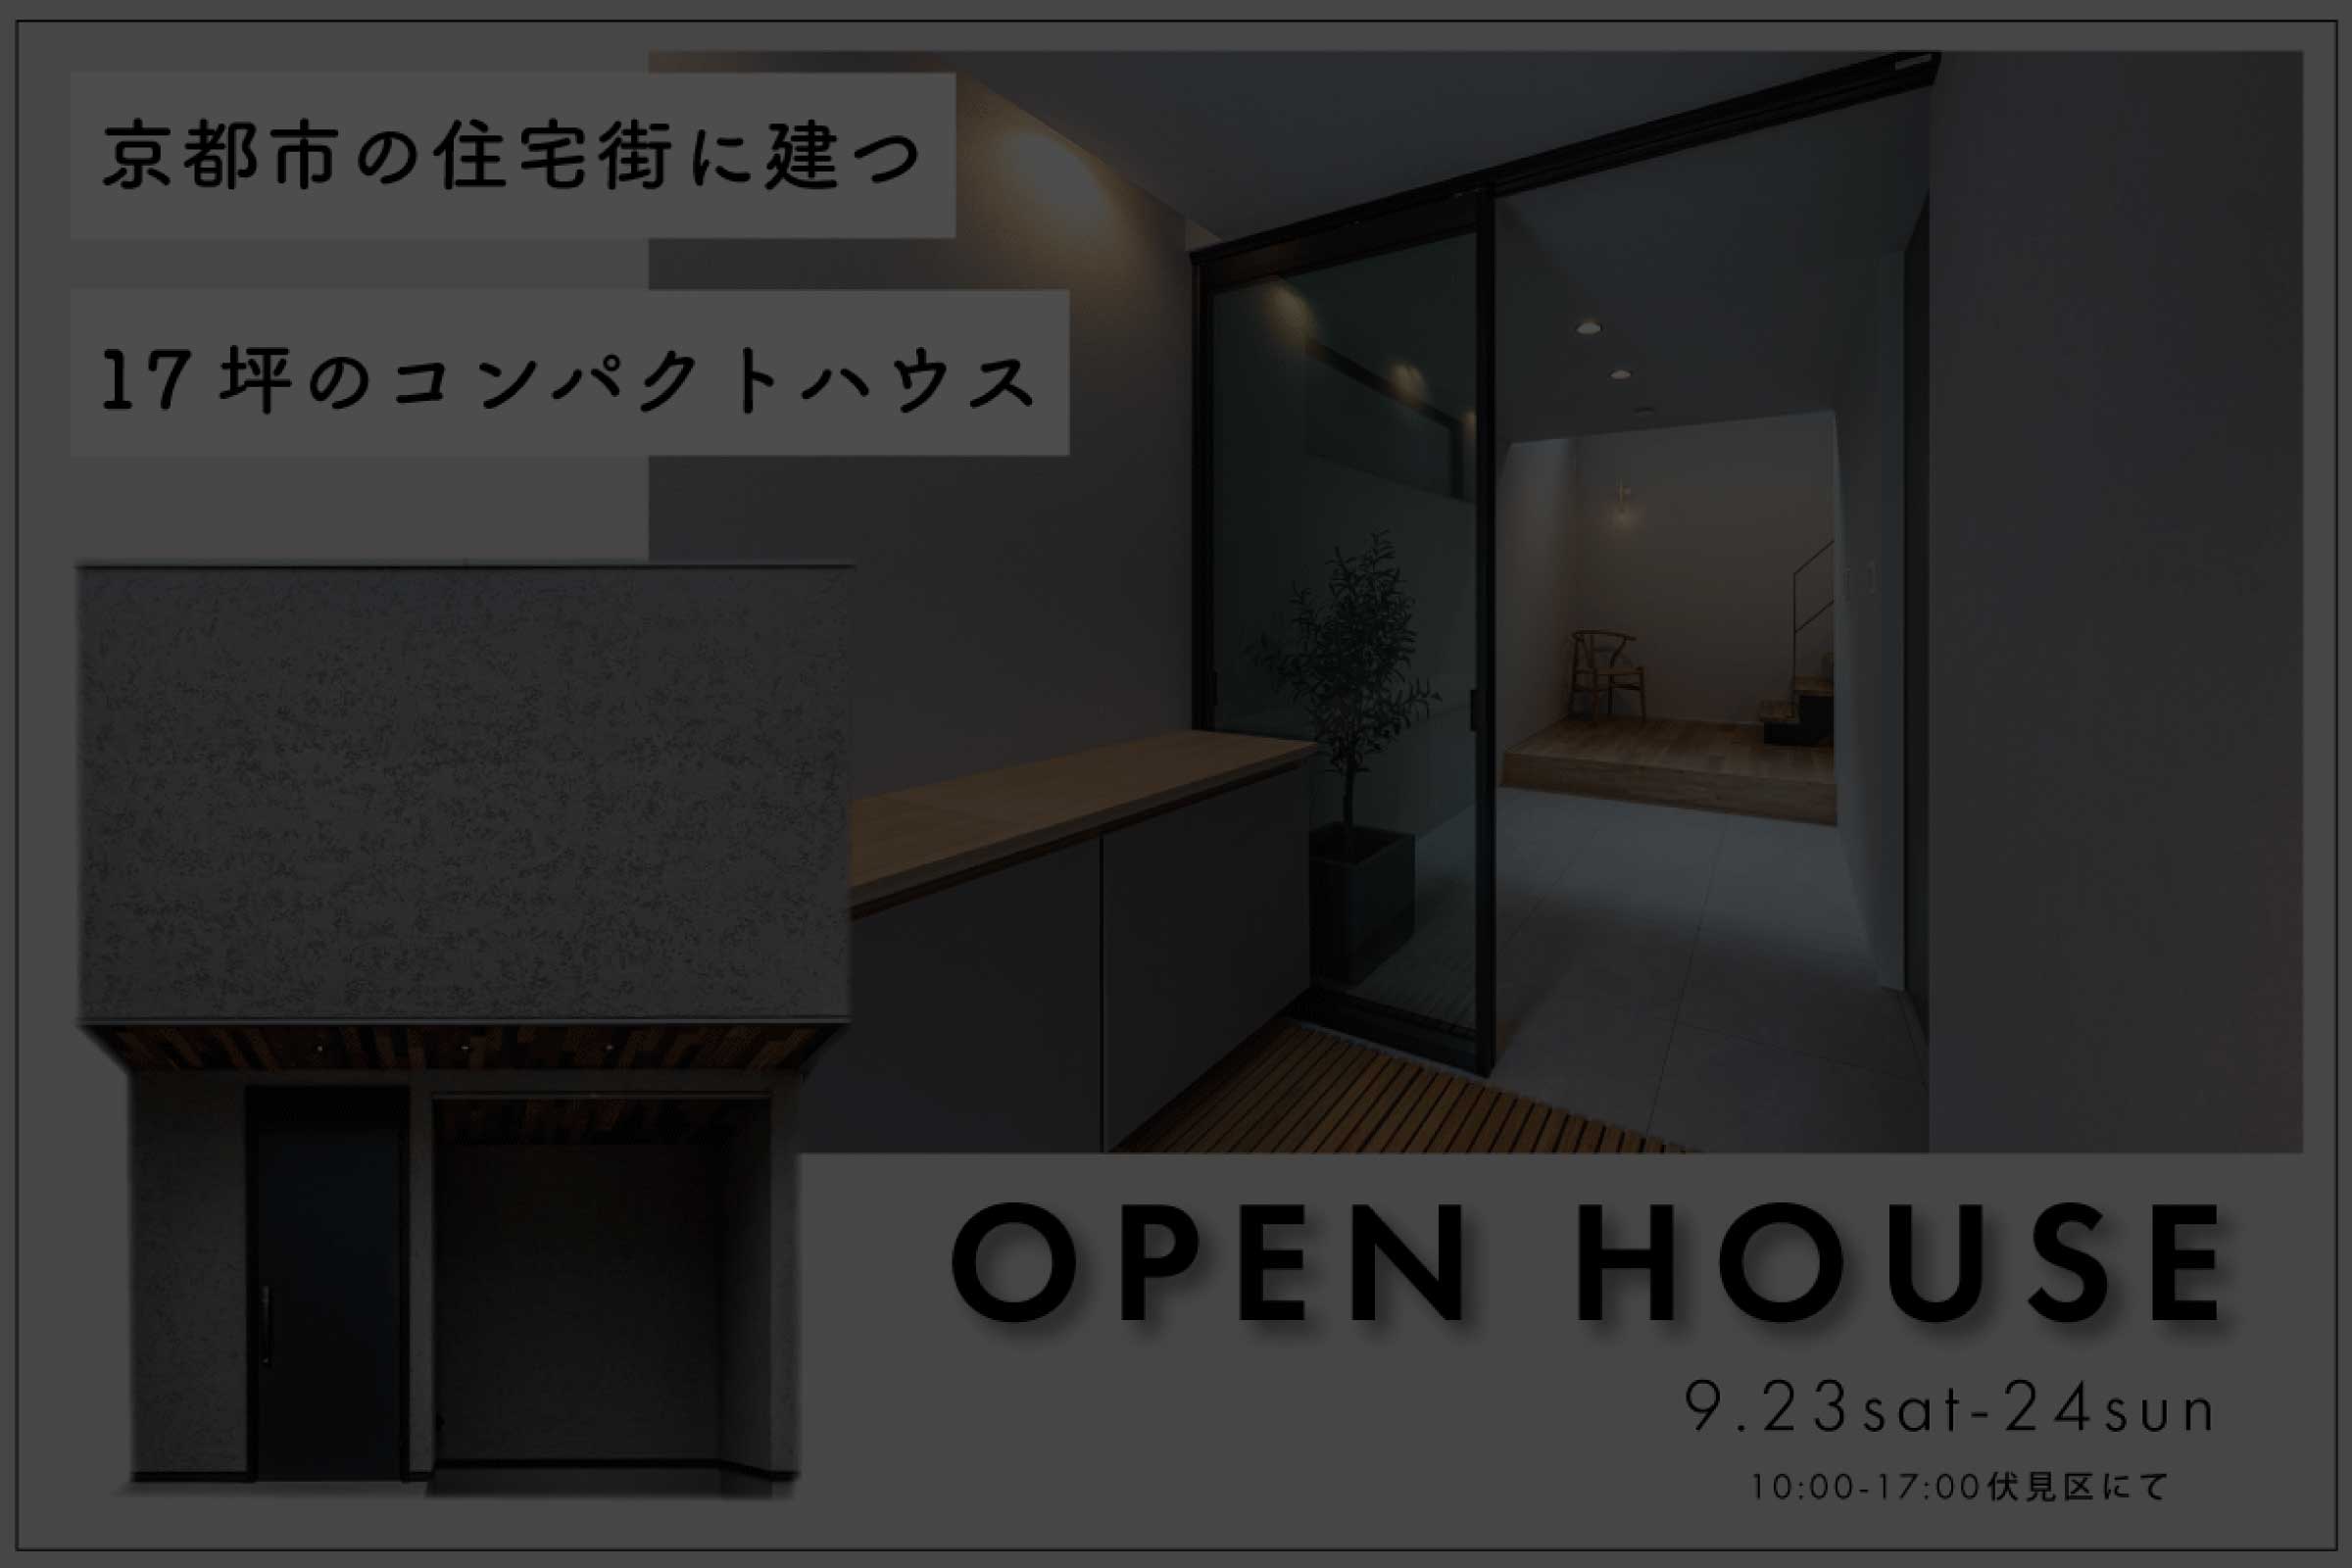 【予約制見学会】京都の住宅街に建つ 17坪のコンパクトハウス